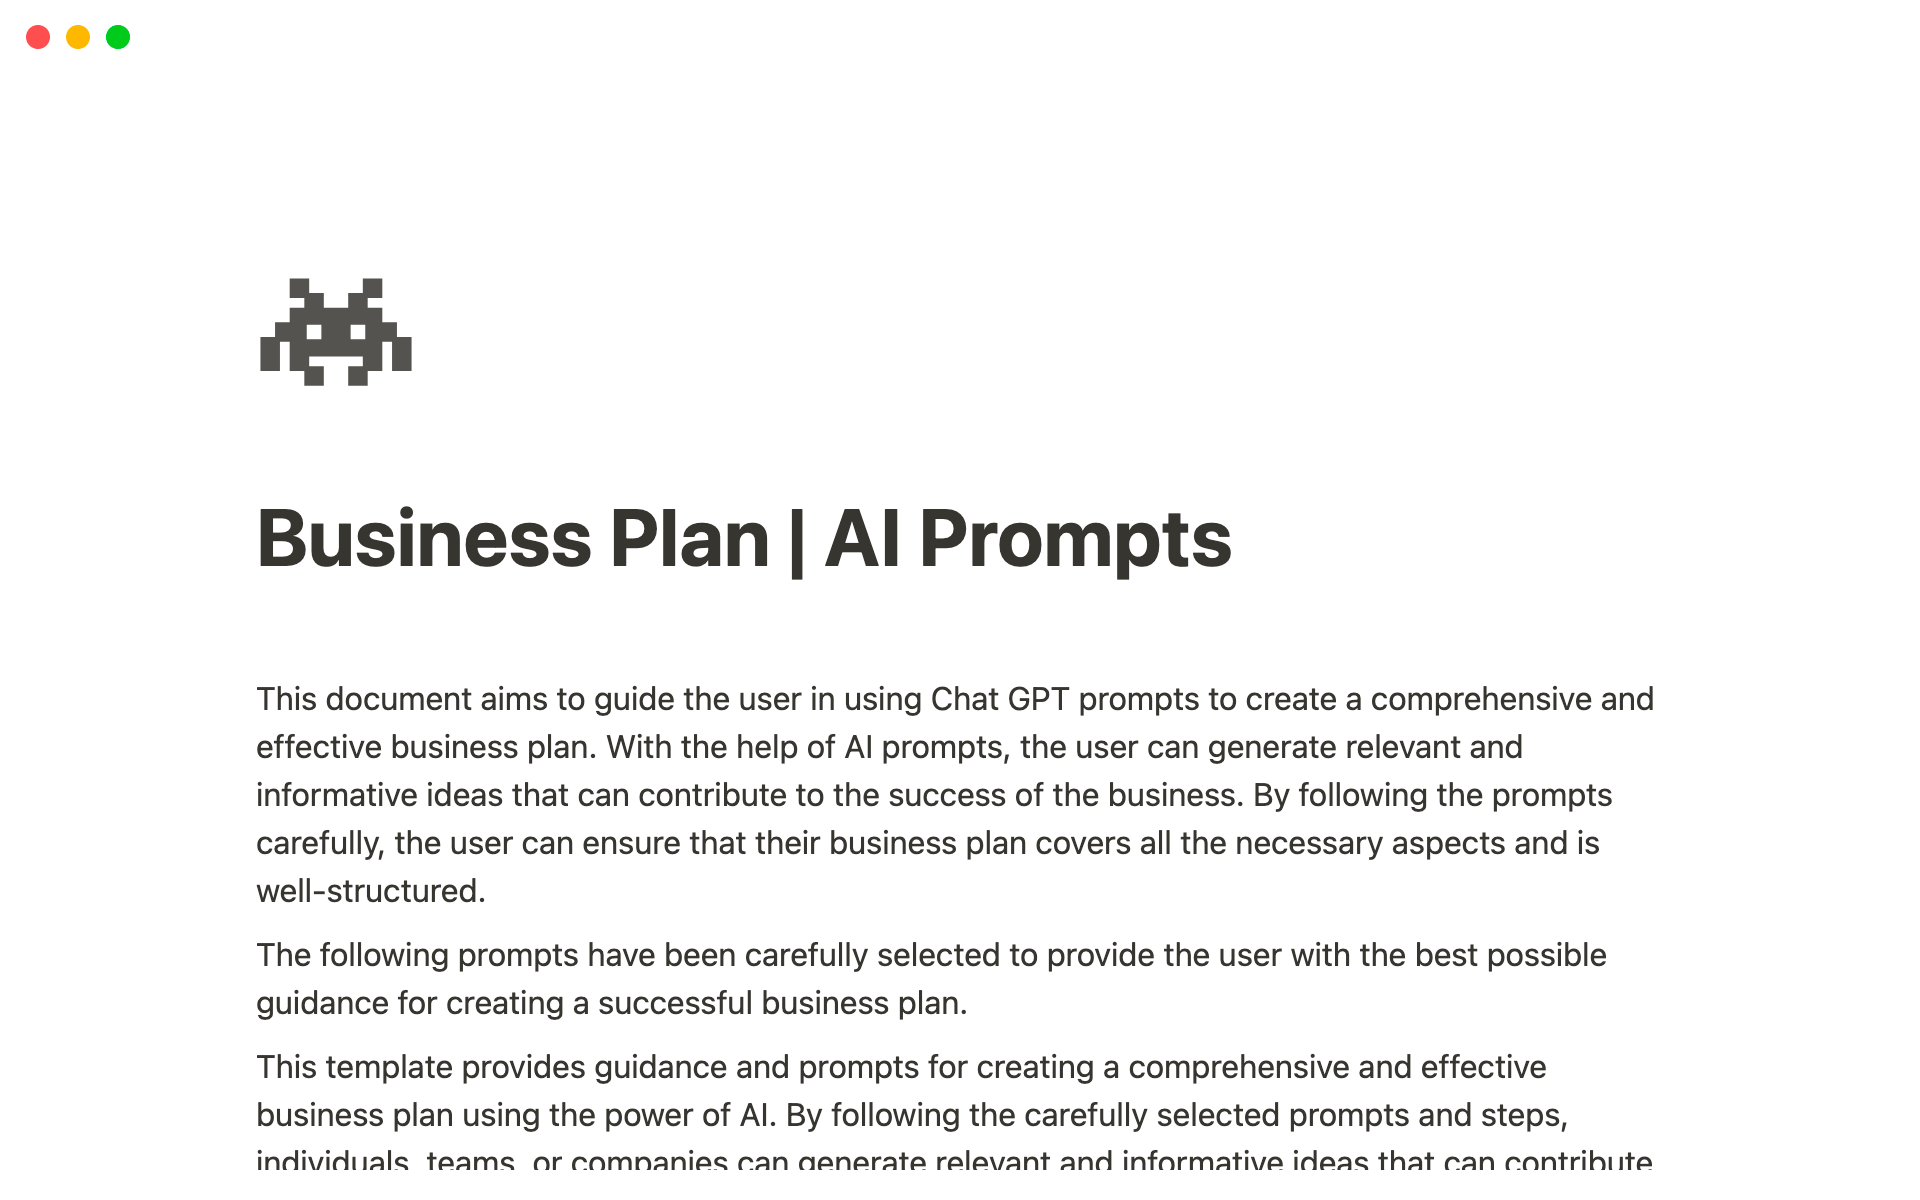 Aperçu du modèle de Business Plan - AI Prompts